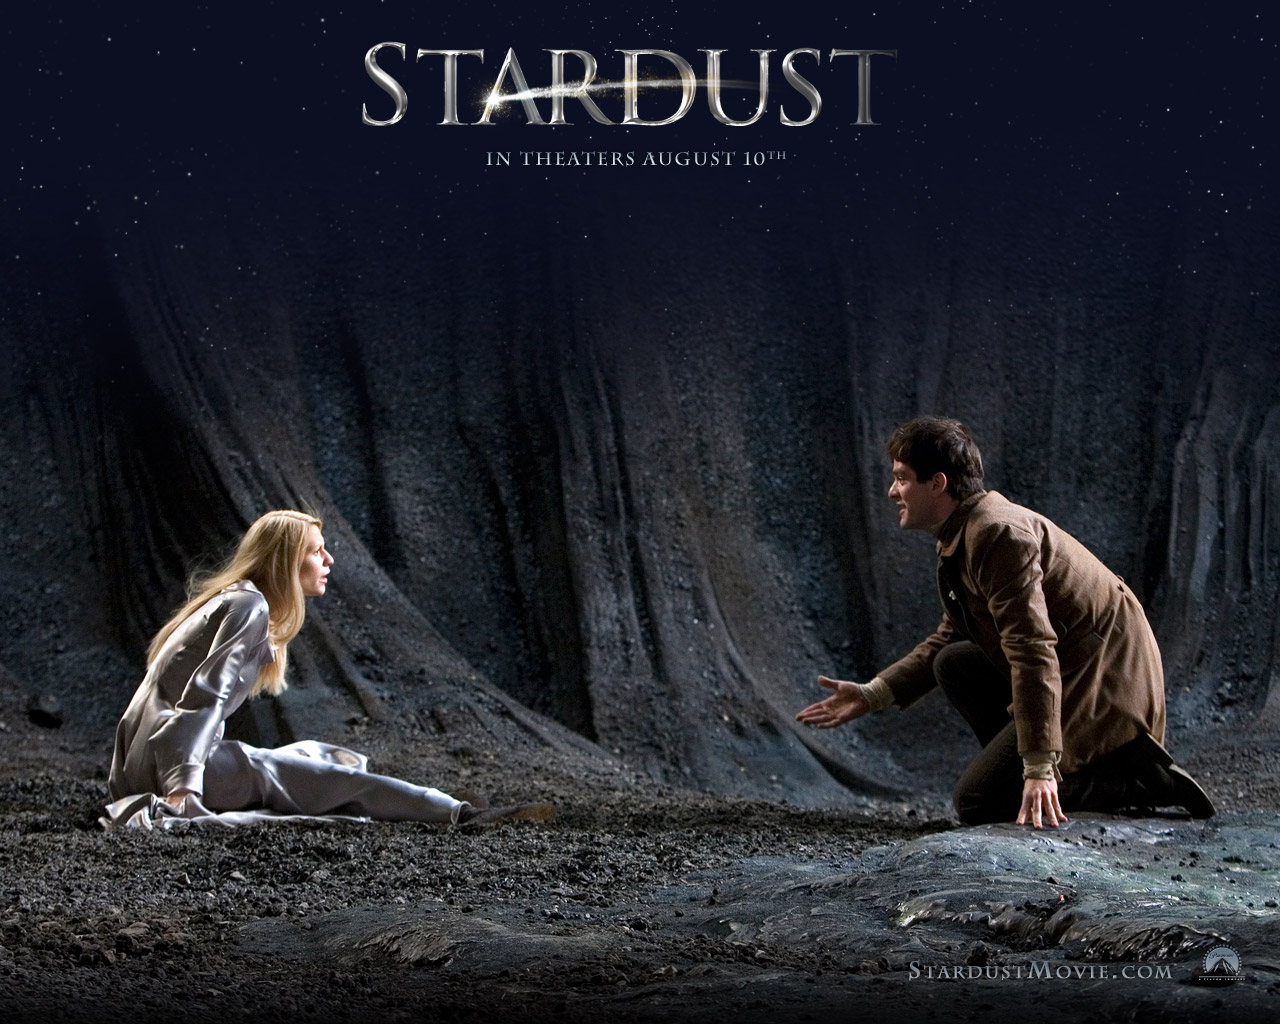 ดูหนังออนไลน์ Stardust ศึกมหัศจรรย์ ปาฏิหาริย์รักจากดวงดาว [DVD Master]